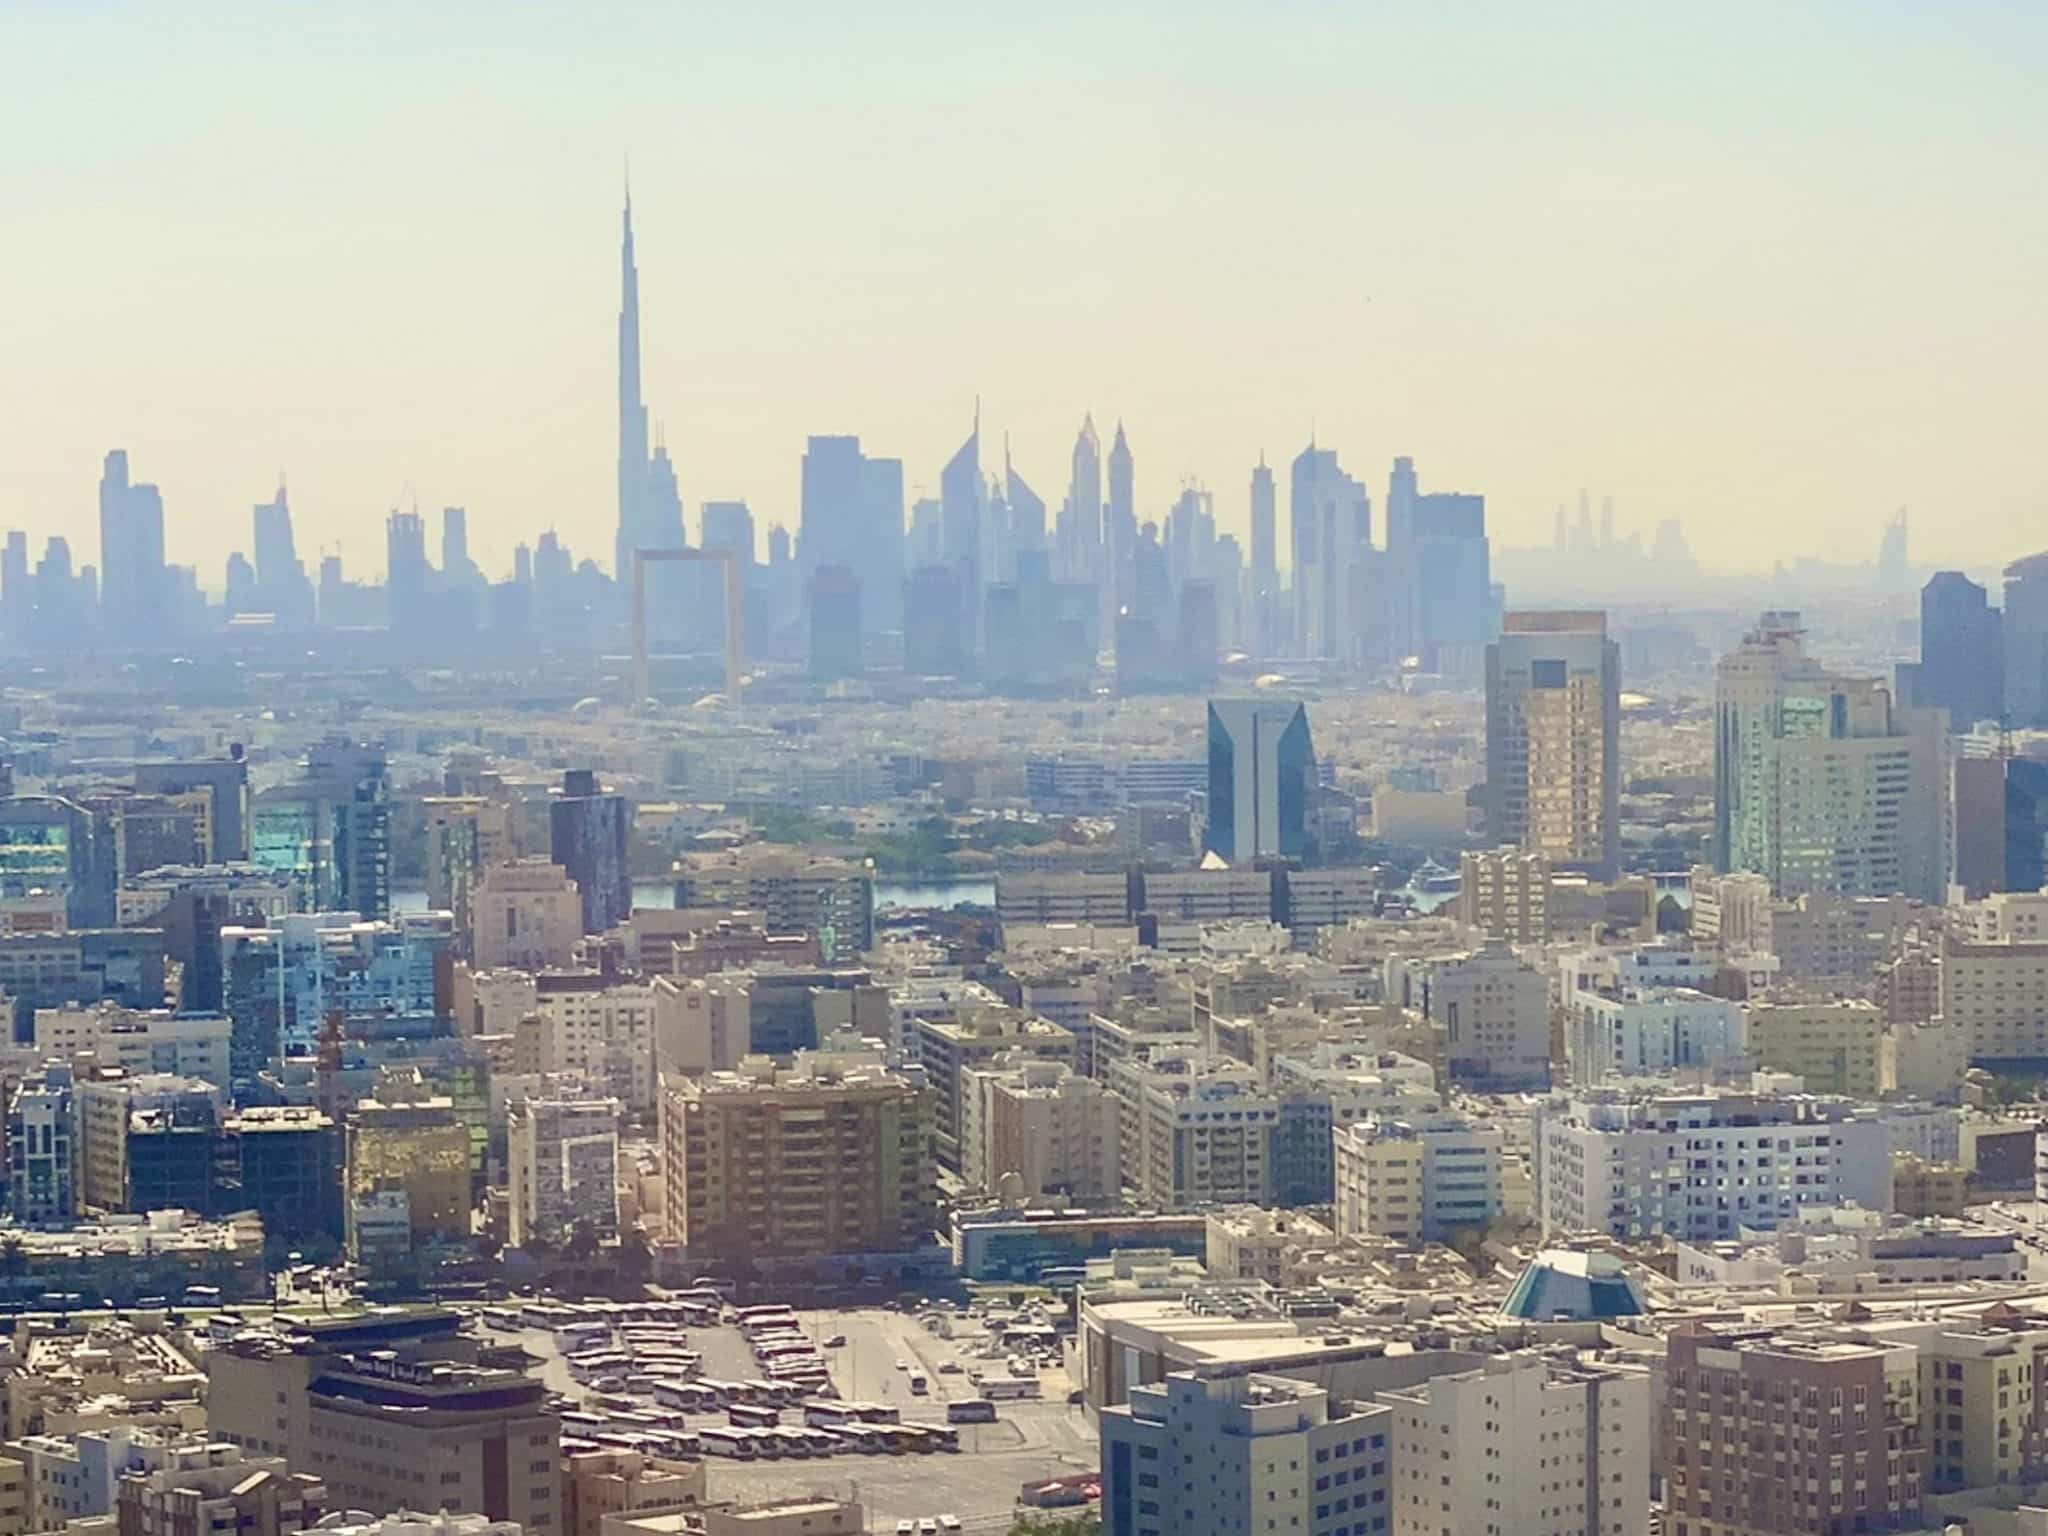 Dubai: Der Orient ist ein Begriff, der hauptsächlich für den Nahen Osten verwendet wird. Er umfasst Teile Asiens und Afrikas und ist bekannt für seine reiche Geschichte, einzigartige Kultur und landschaftliche Schönheit. Foto: Sascha Tegtmeyer